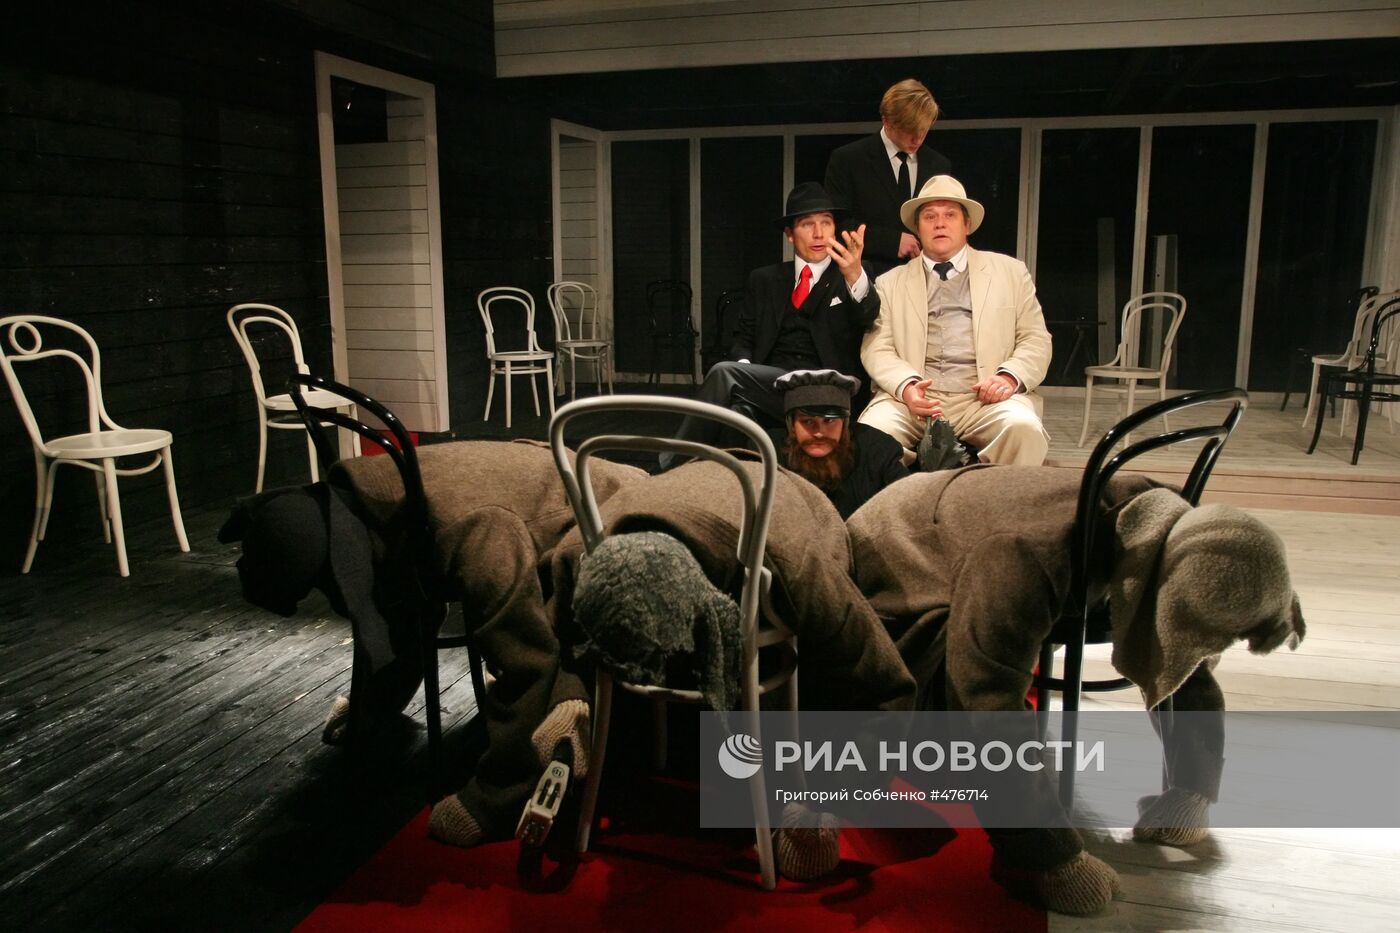 Спектакль "Волки и овцы" в театре под руководством О.Табакова